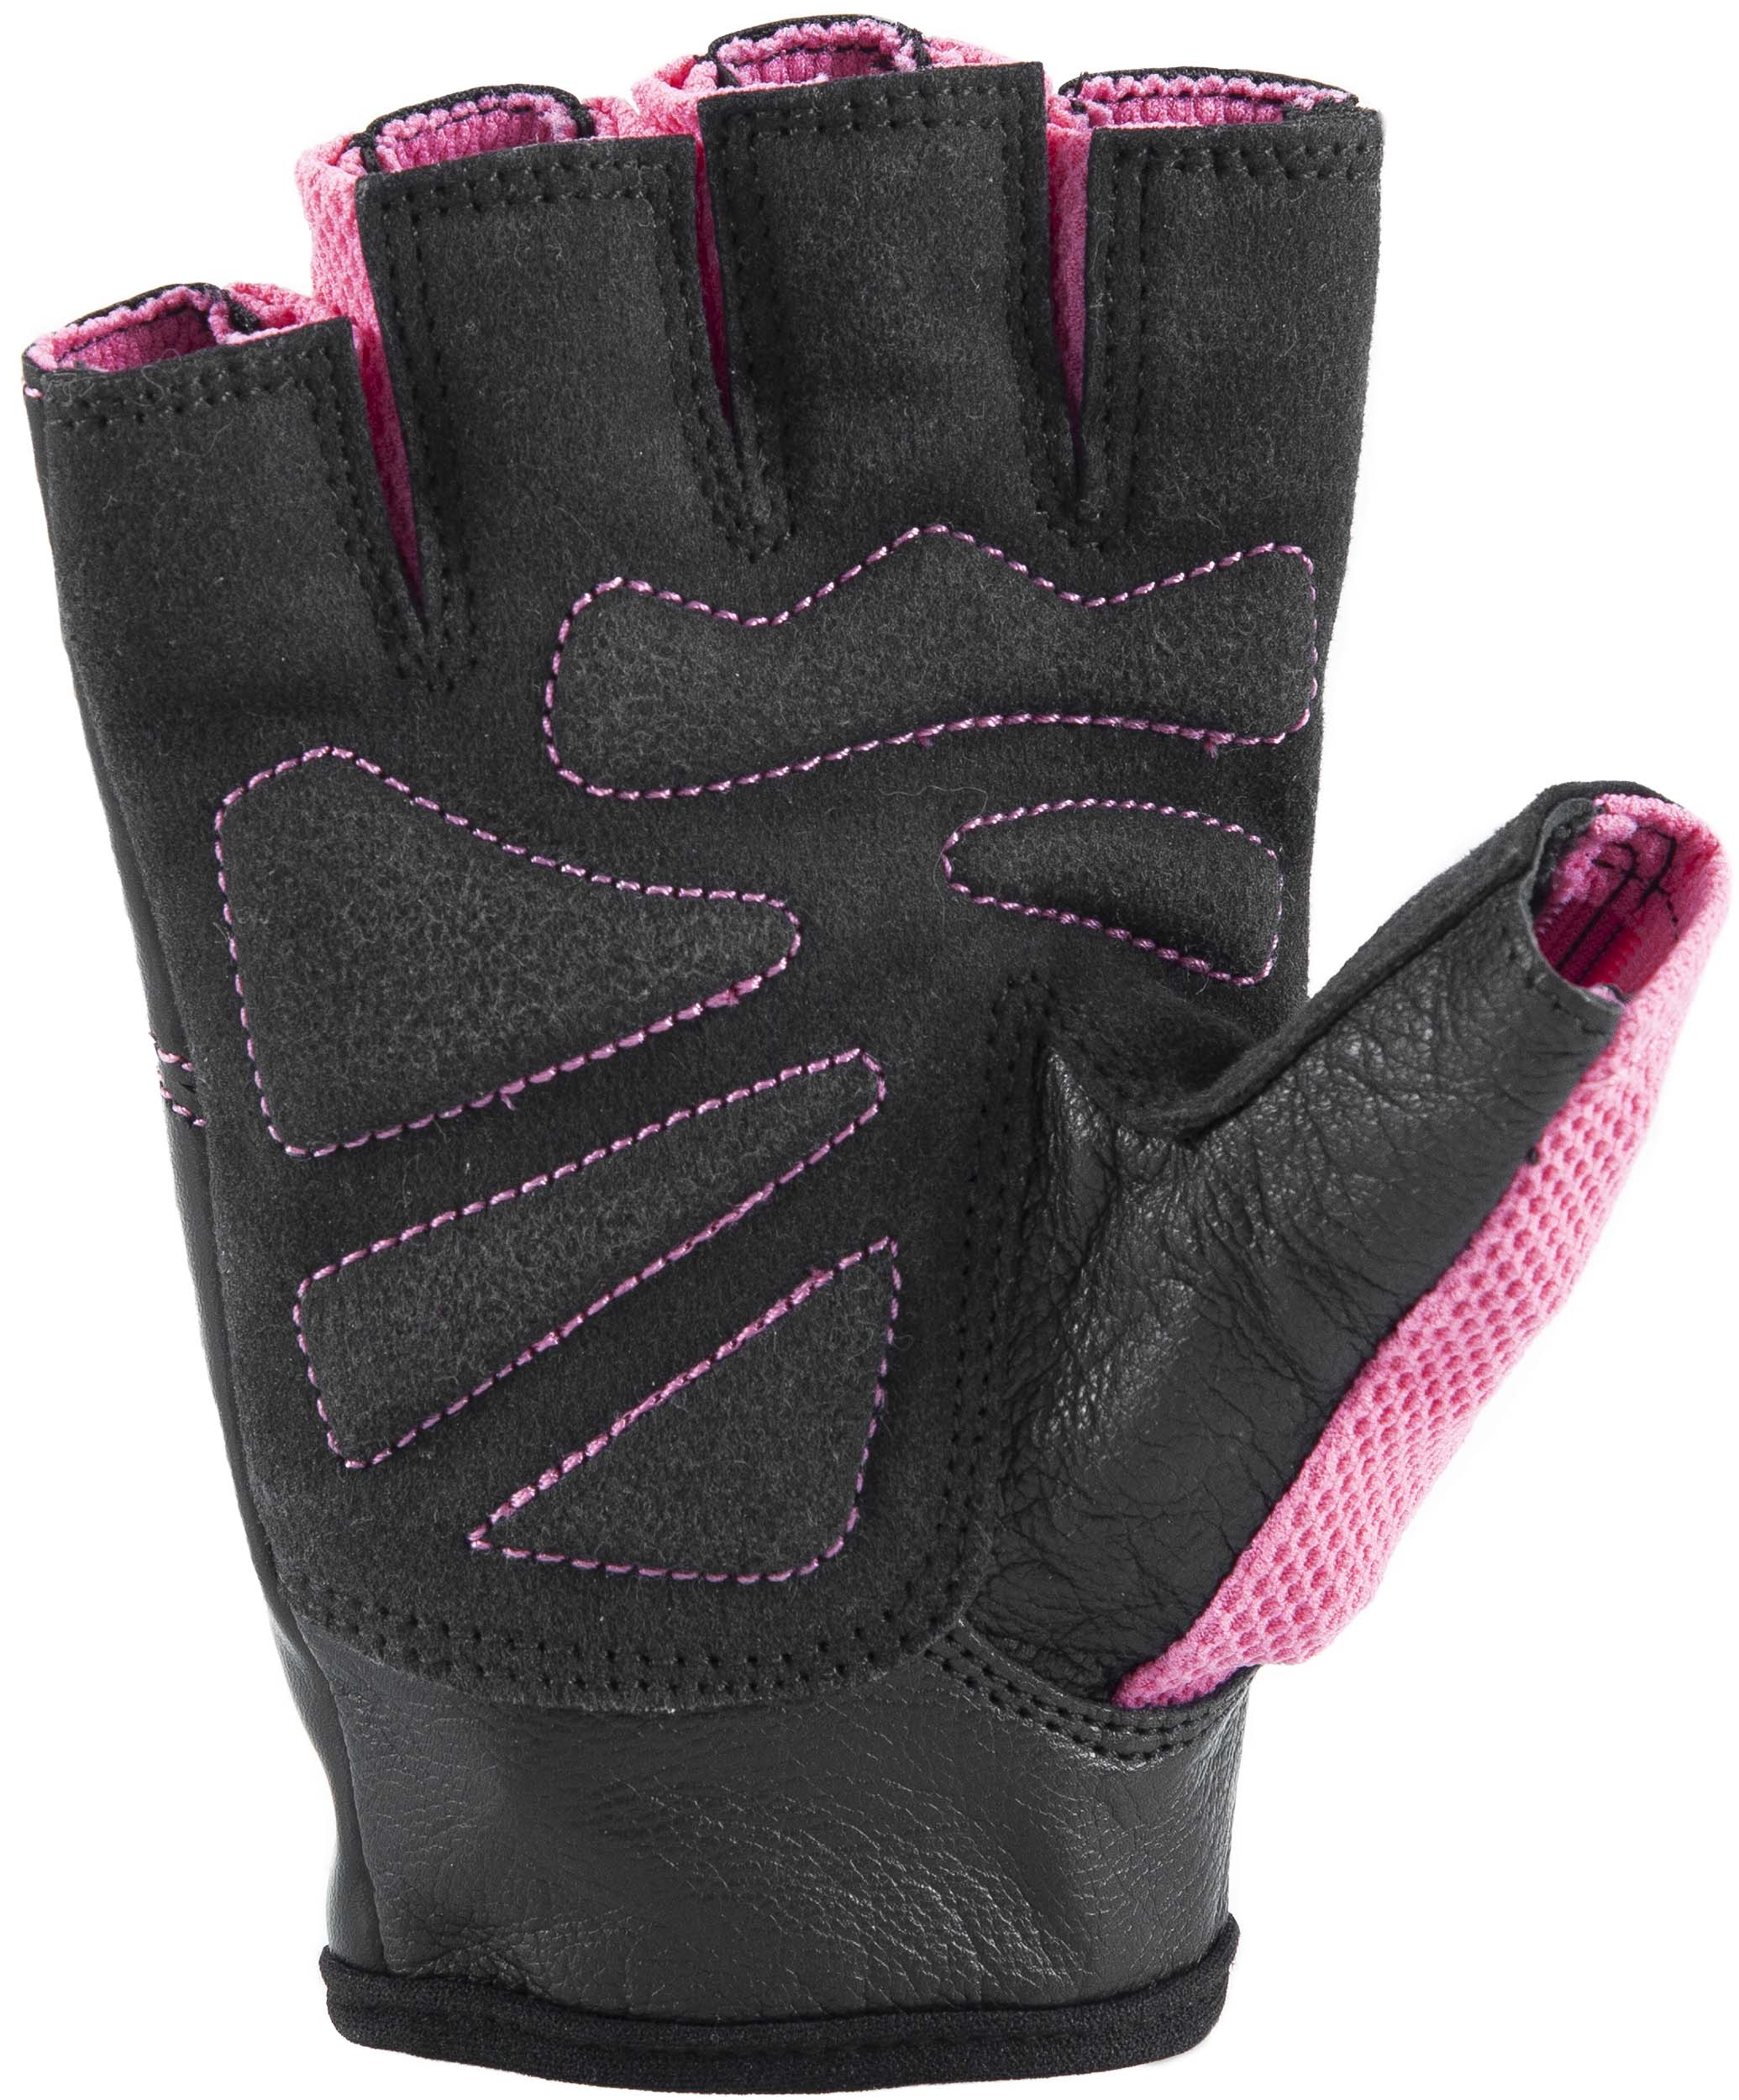 Γάντια Άρσης Βαρών AMILA Amara PU Ροζ/Μαύρο XXL